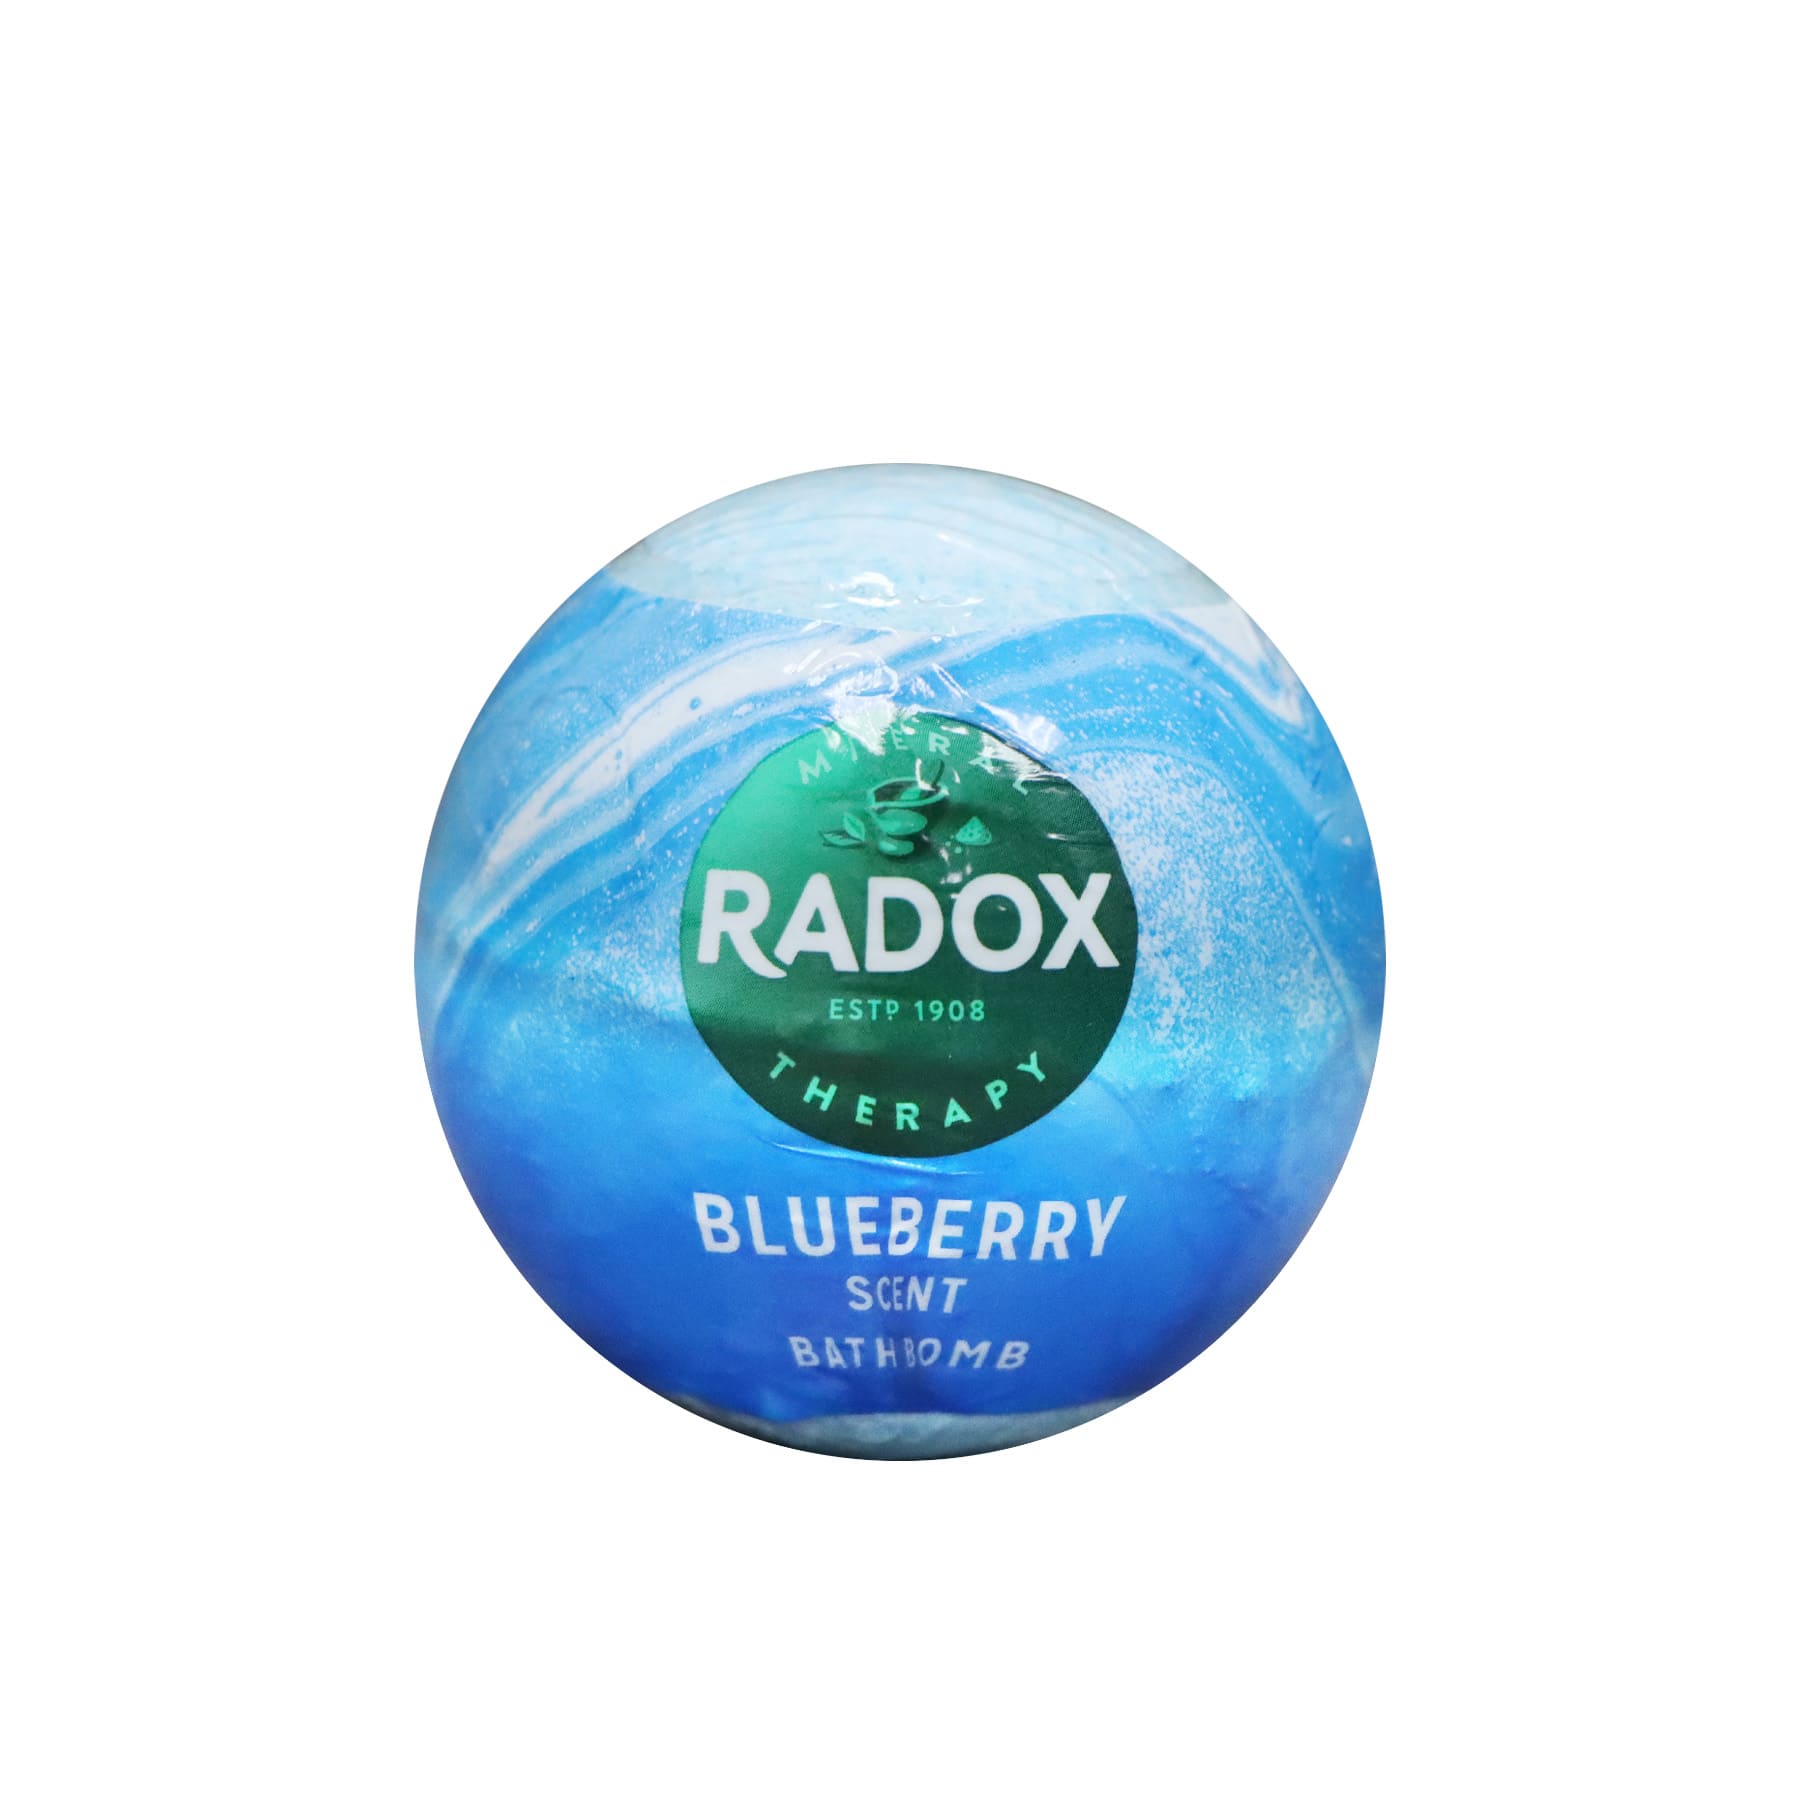 Radox Bath Bomb 100g (Blueberry)